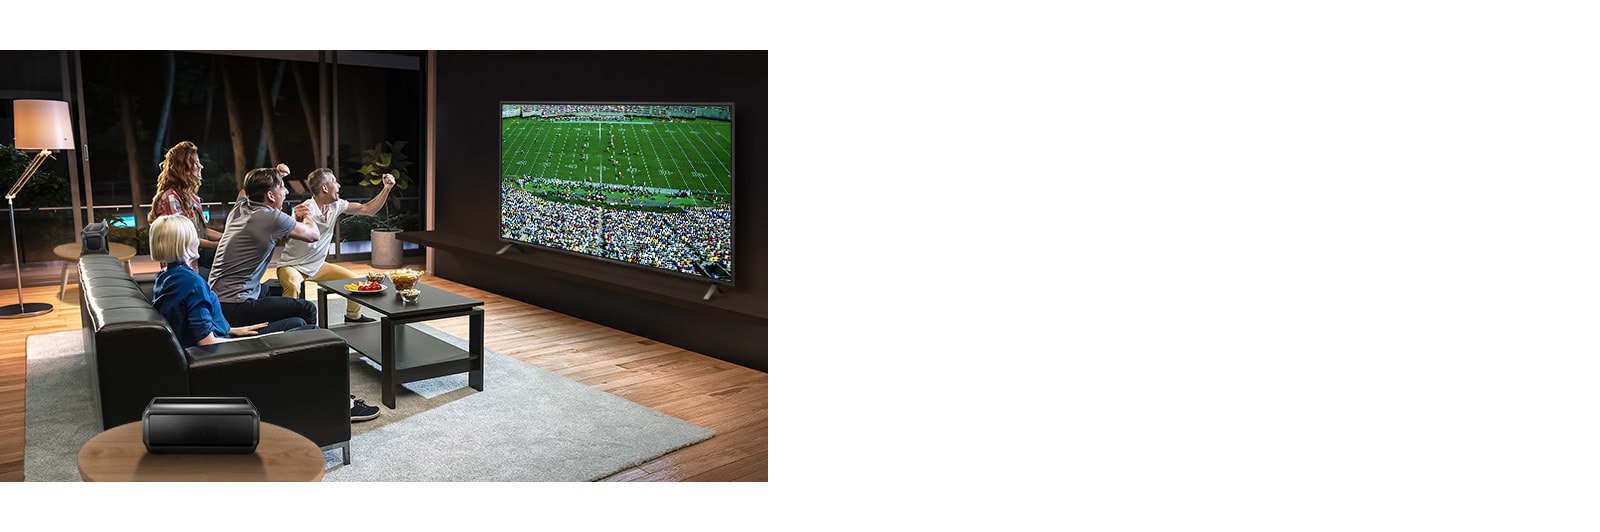 In soggiorno, le persone guardano la partita sulla TV con altoparlanti posteriori Bluetooth.